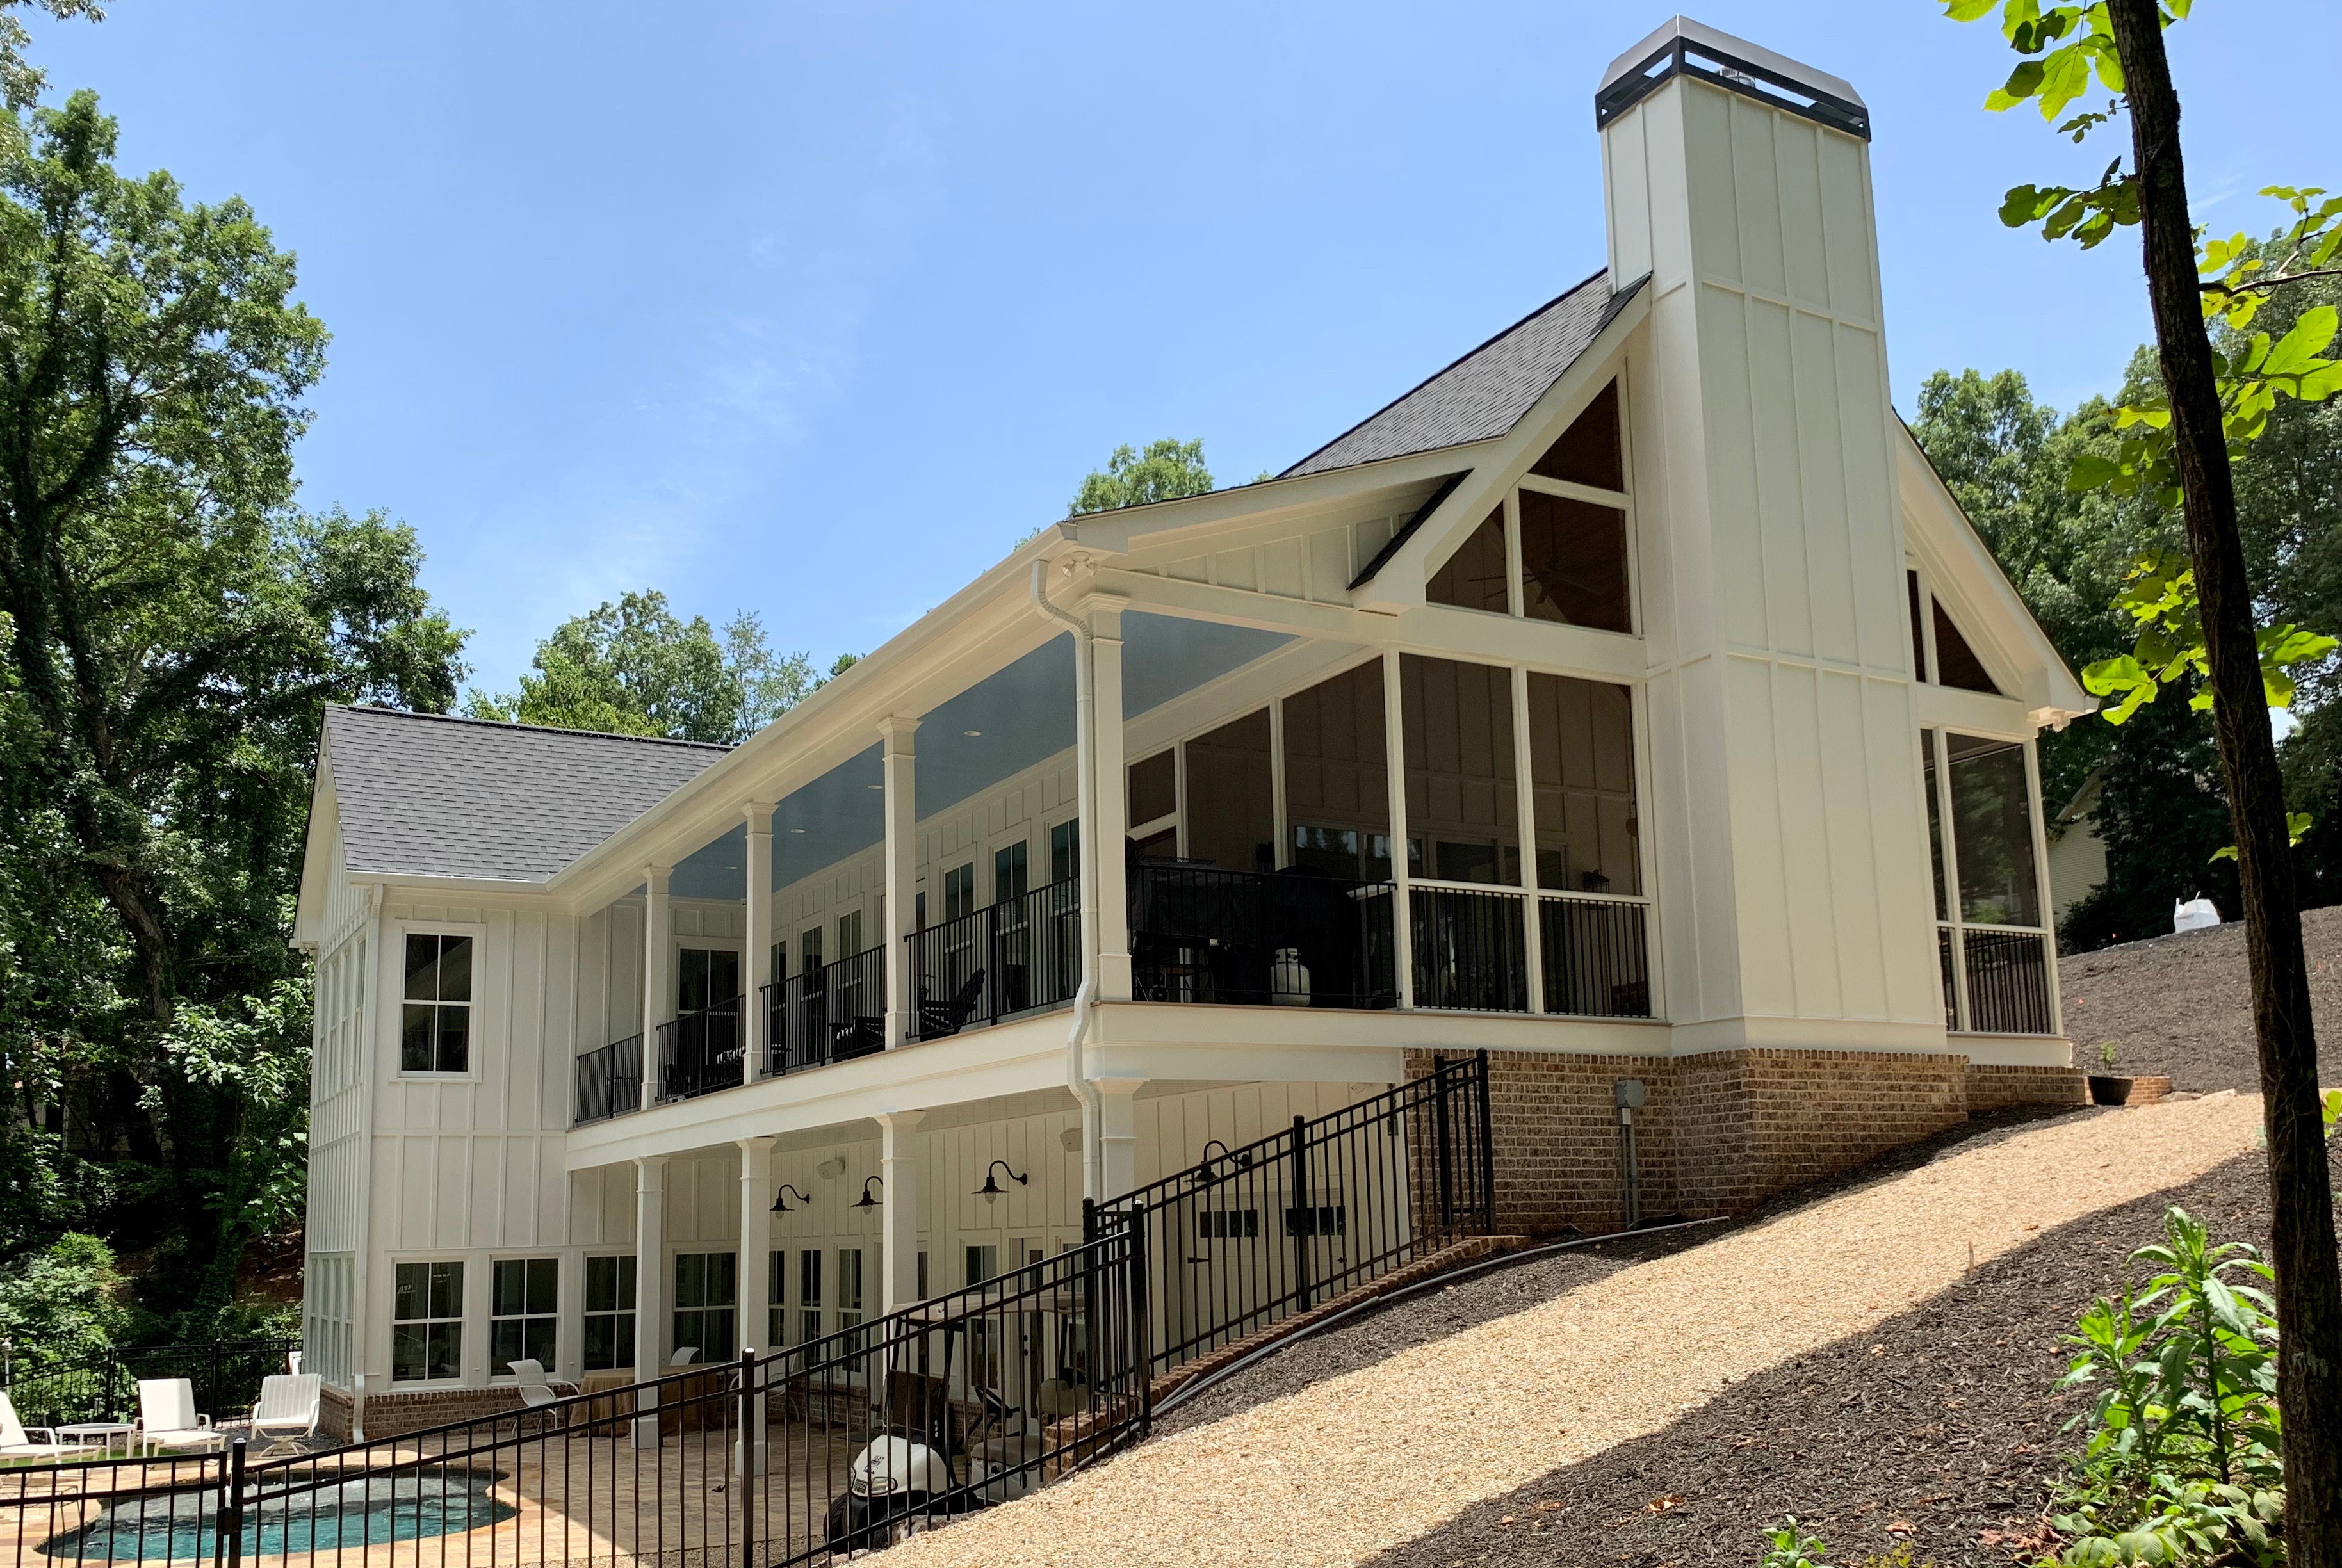 The Modern Barn House